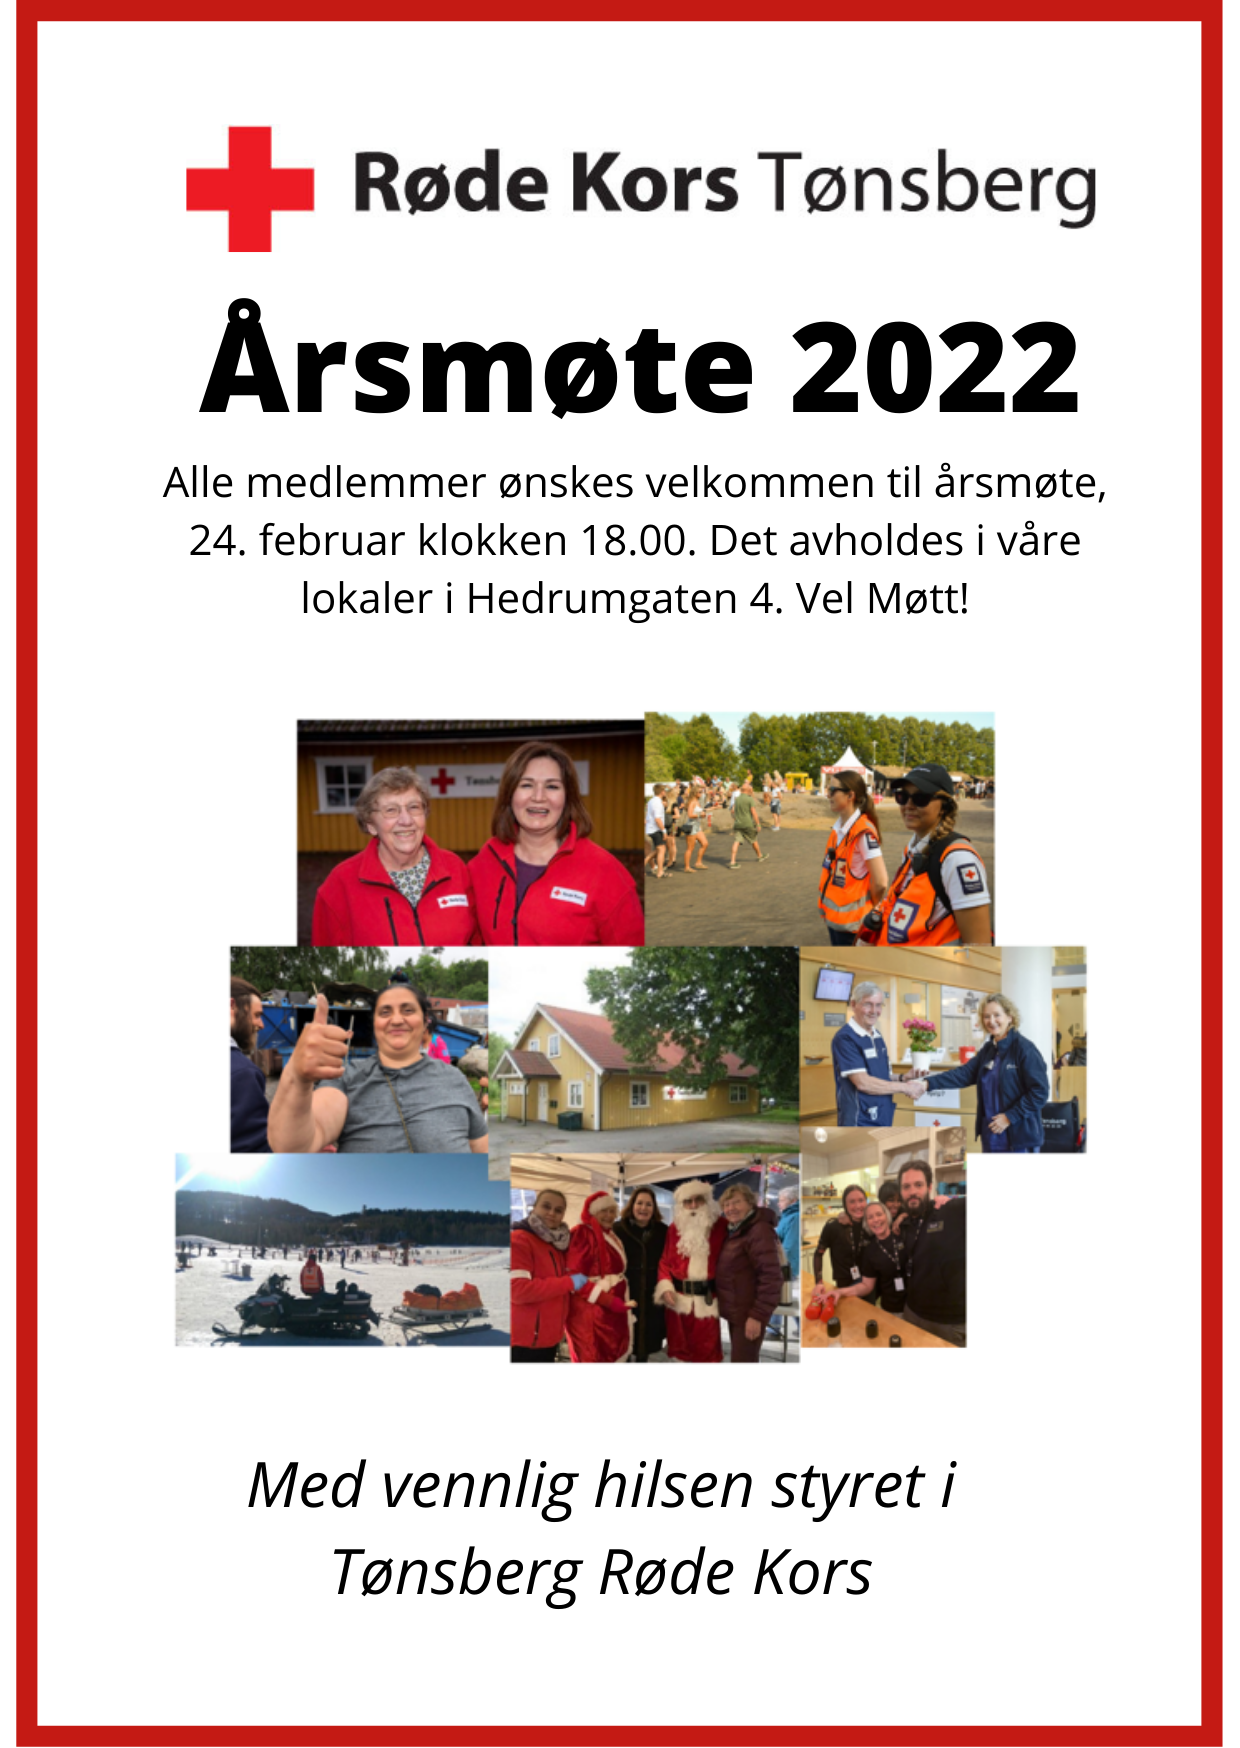 Årsmøte Tønsberg Røde Kors 2022.png